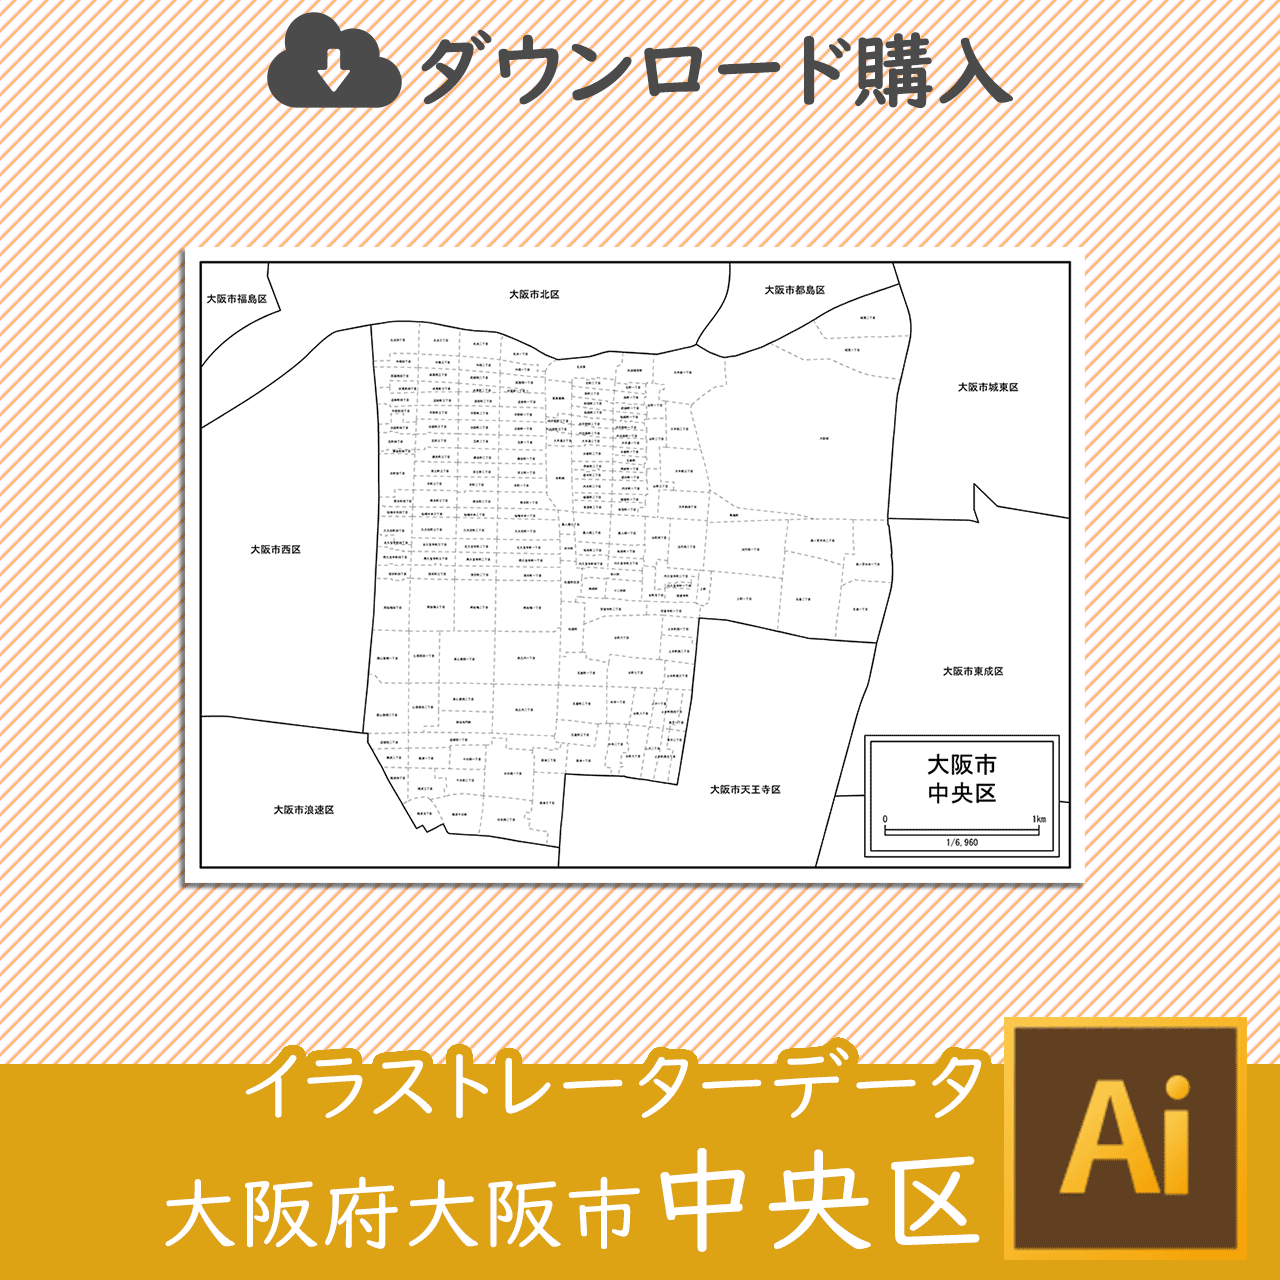 大阪市中央区の白地図のサムネイル画像